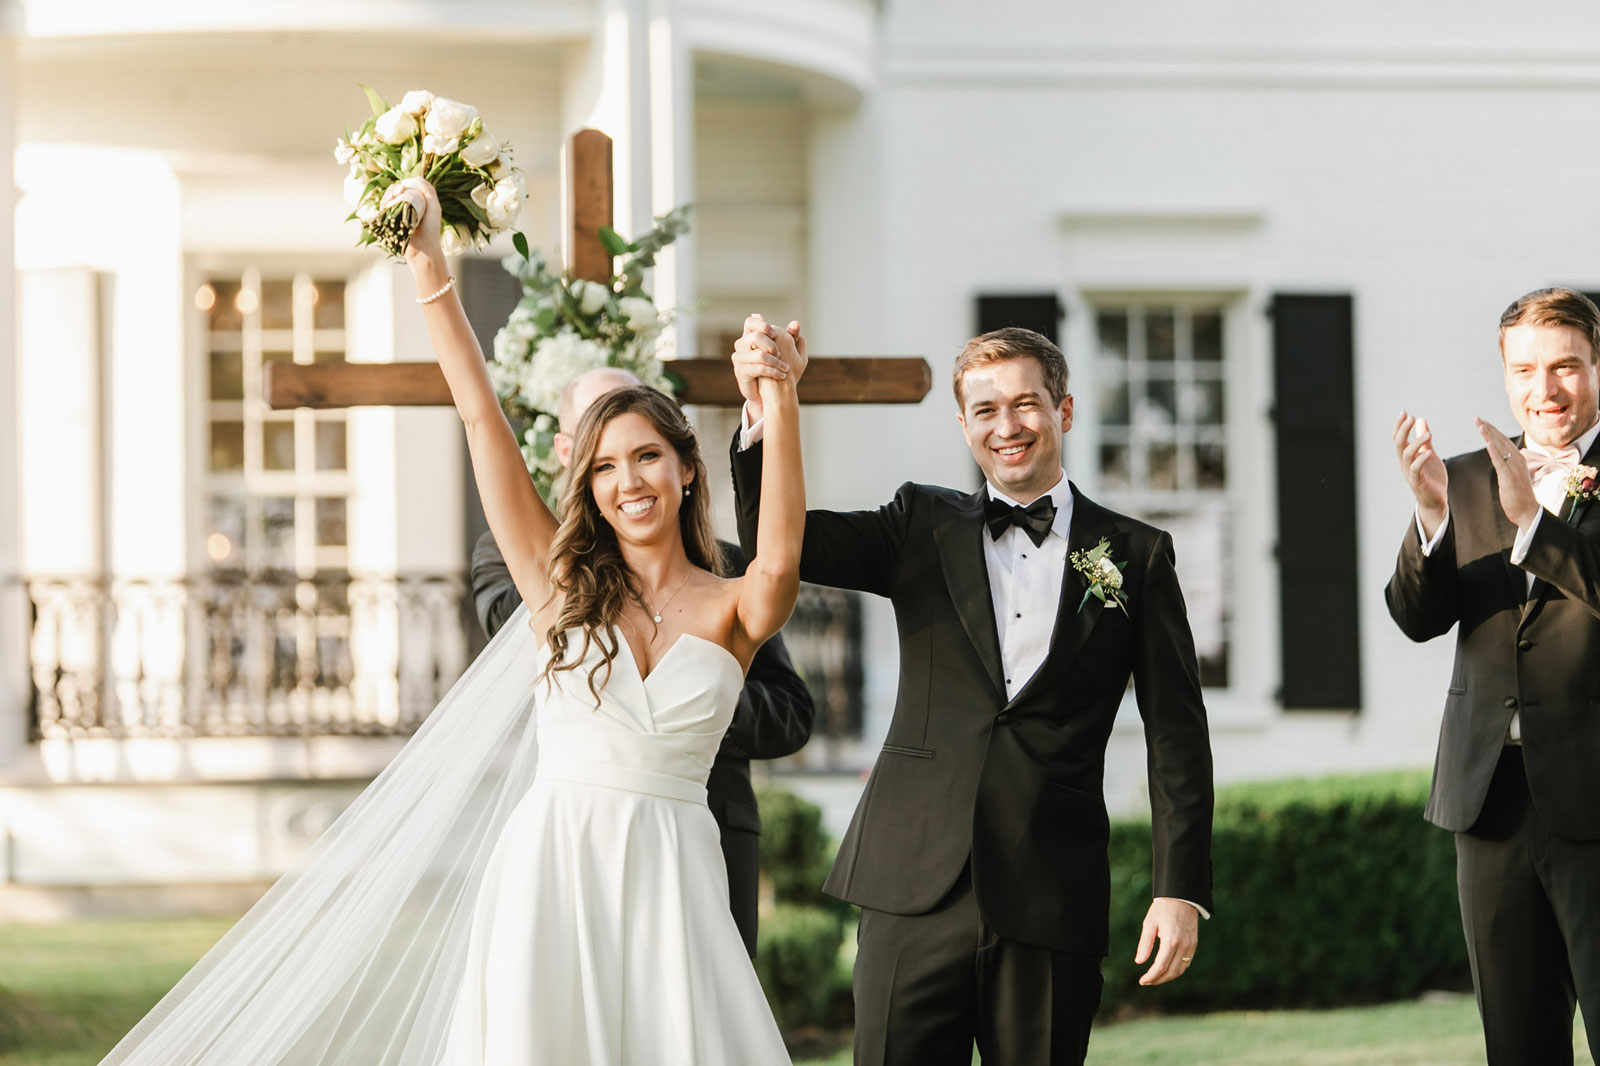 Outdoor Wedding vs Indoor Wedding – From The Professionals